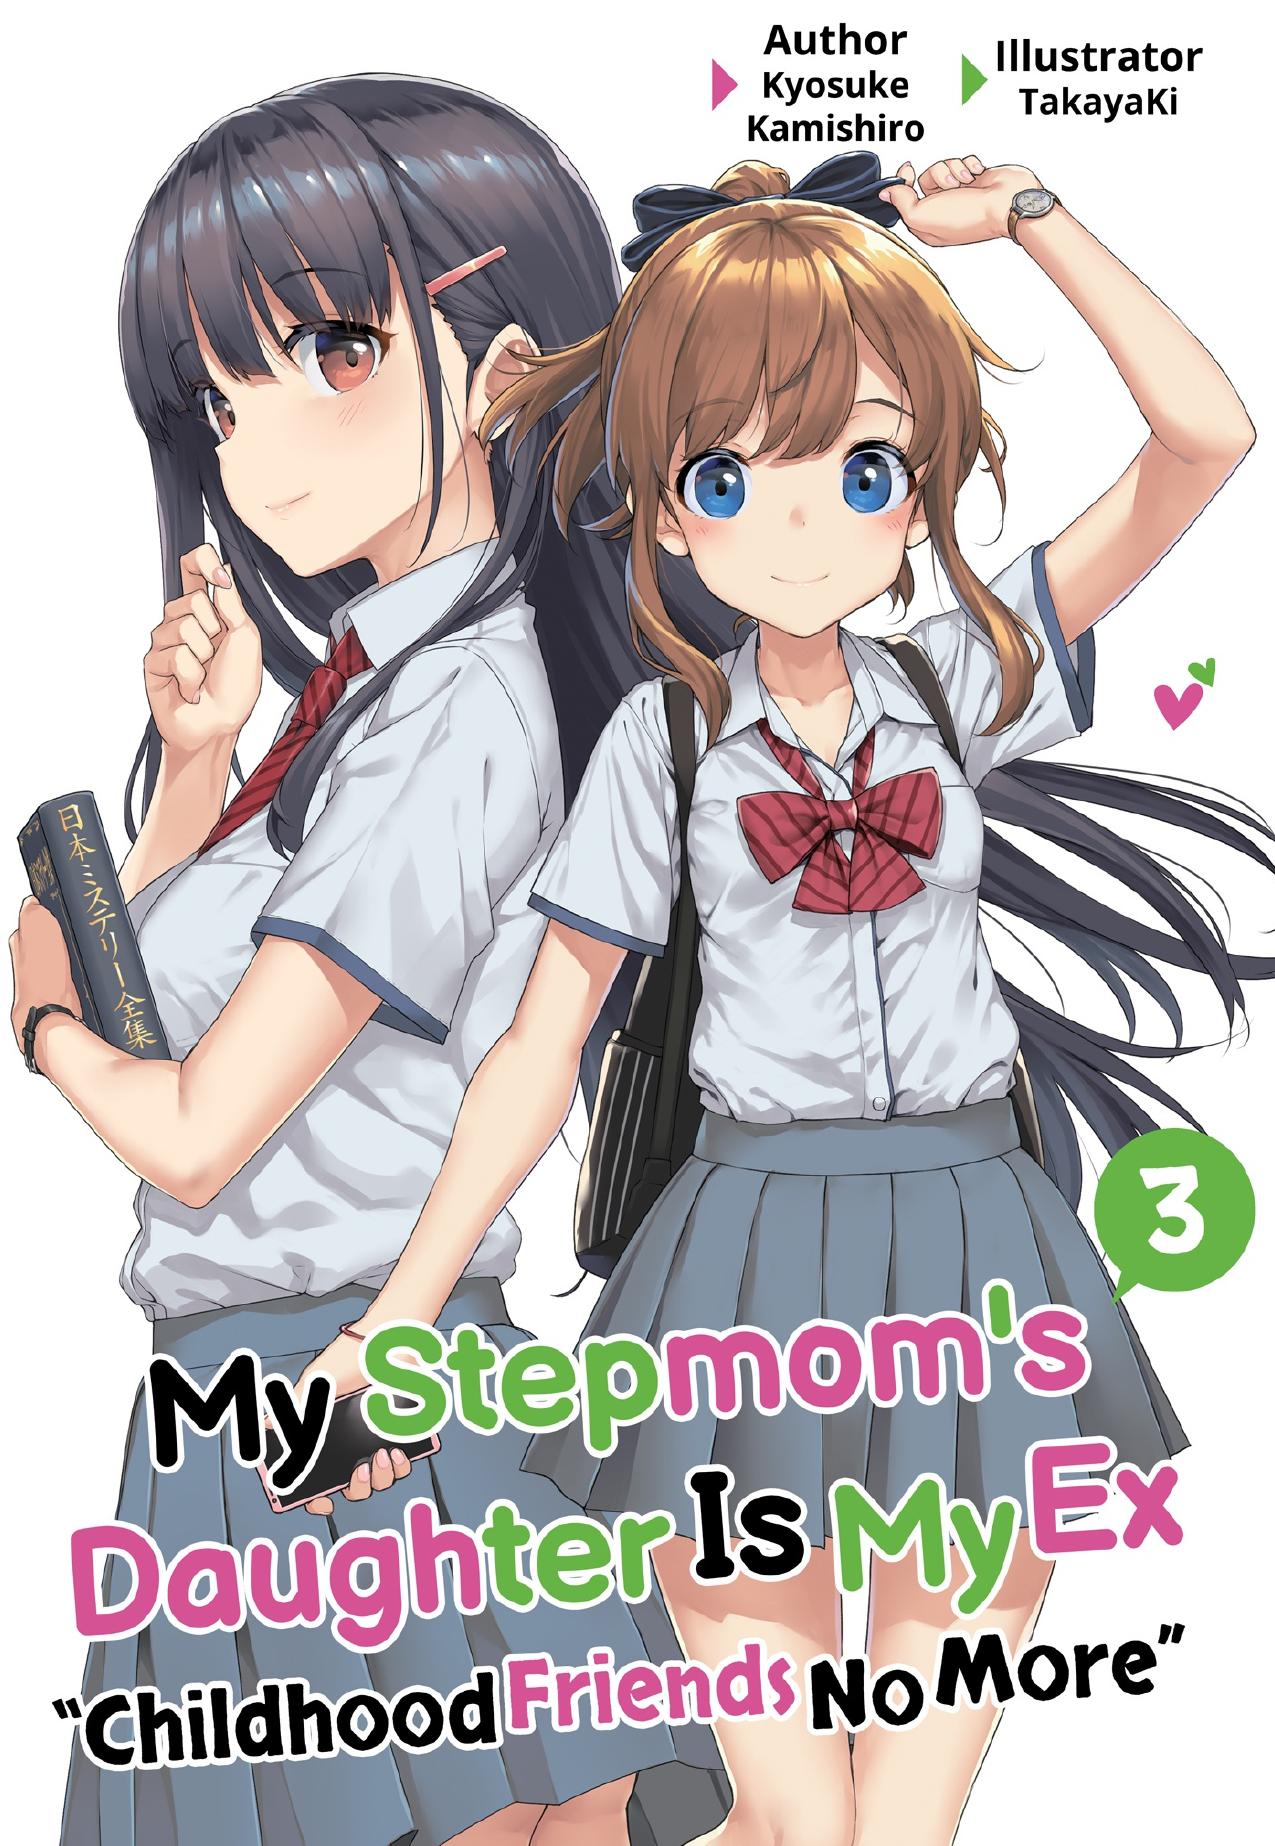 My Stepmom's Daughter Is My Ex: Volume 3 by Kyosuke Kamishiro